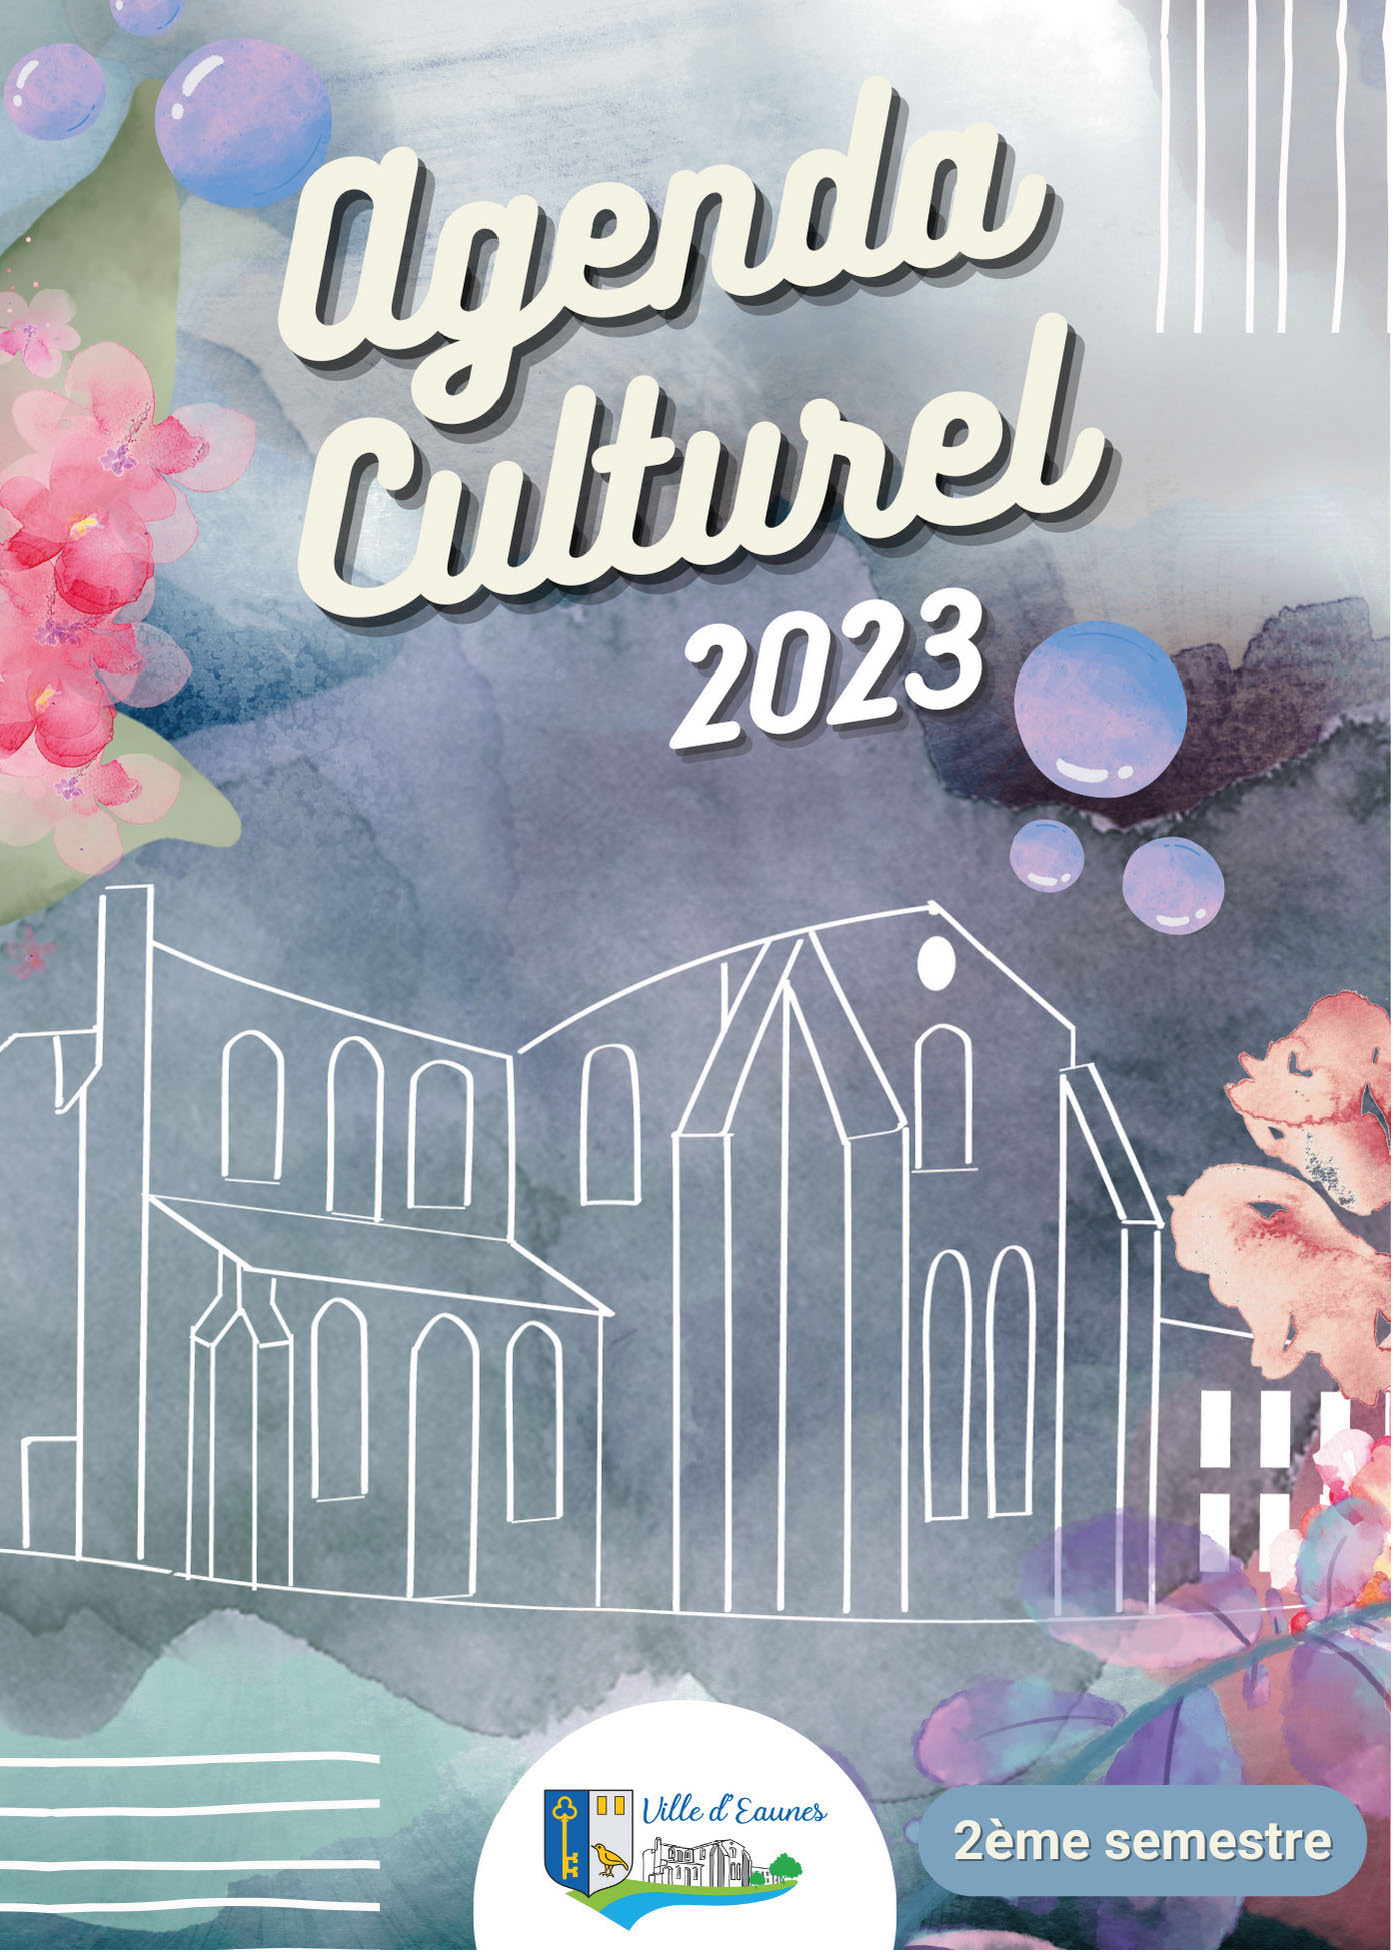 Agenda-Culturel-2e-semestre-1ere de couv_Page_01